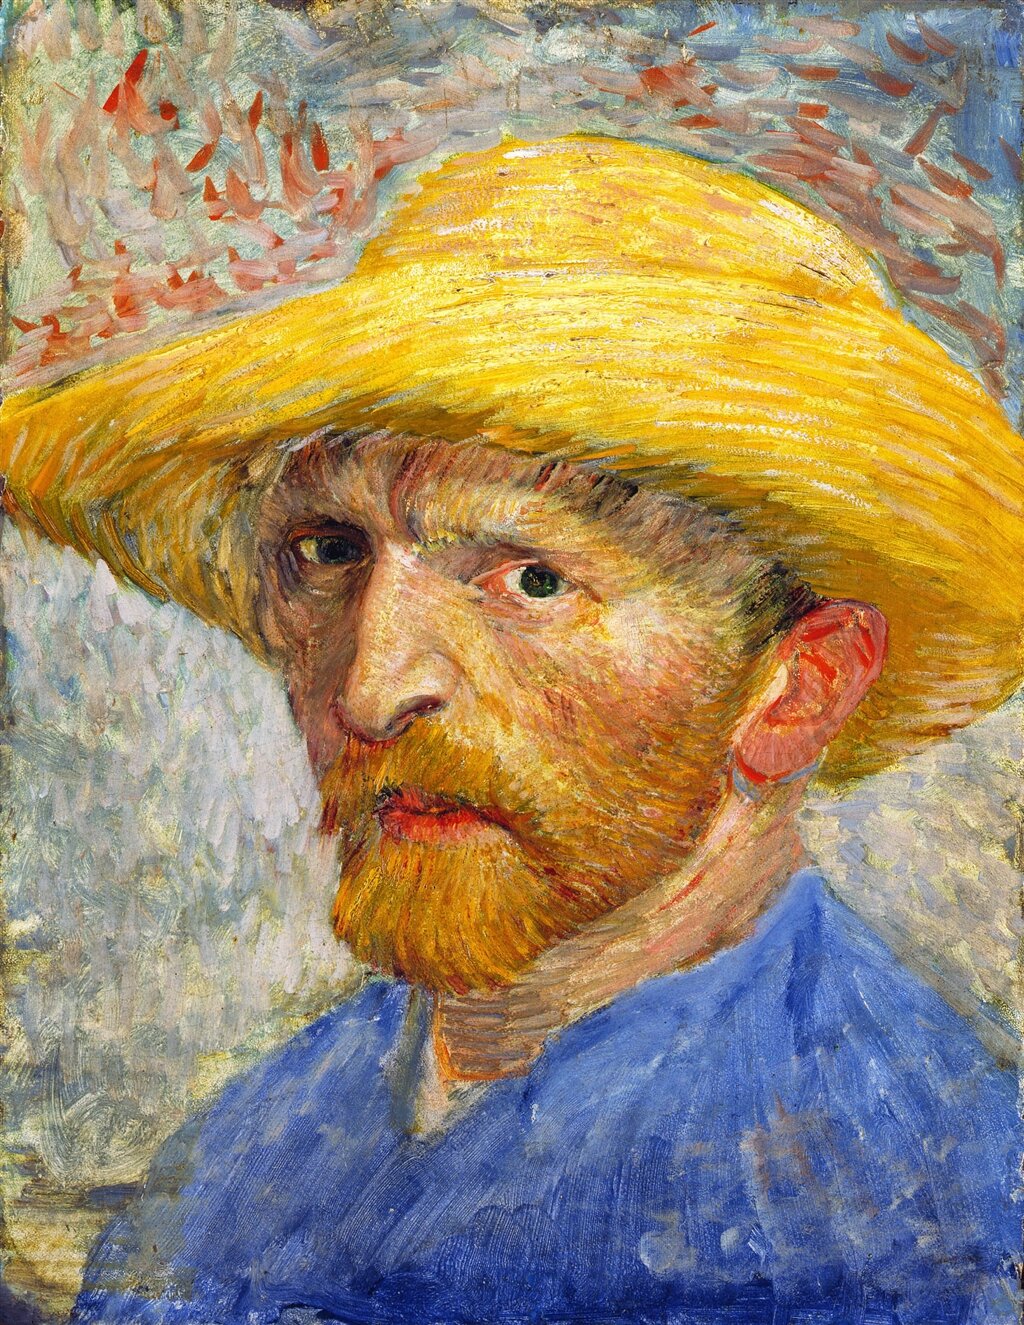 Obraz przedstawia autoportret Vincenta van Gogha. Ma na głowie żółty kapelusz z okrągłym, zakrzywionym do góry, rondem. Ma rude, krzaczaste brwi i brązowe oczy spoglądające na odbiorcę oraz duży, lekko zakrzywiony nos i rudą brodę. Ubrany jest w niebieską koszulę. Ukazany jest od ramion w górę. Tułów skierowany ma w lewą stronę, a głowę odwróconą w stronę odbiorcy. Tło jest zamazane, przeważają błękitne i czerwone kolory.